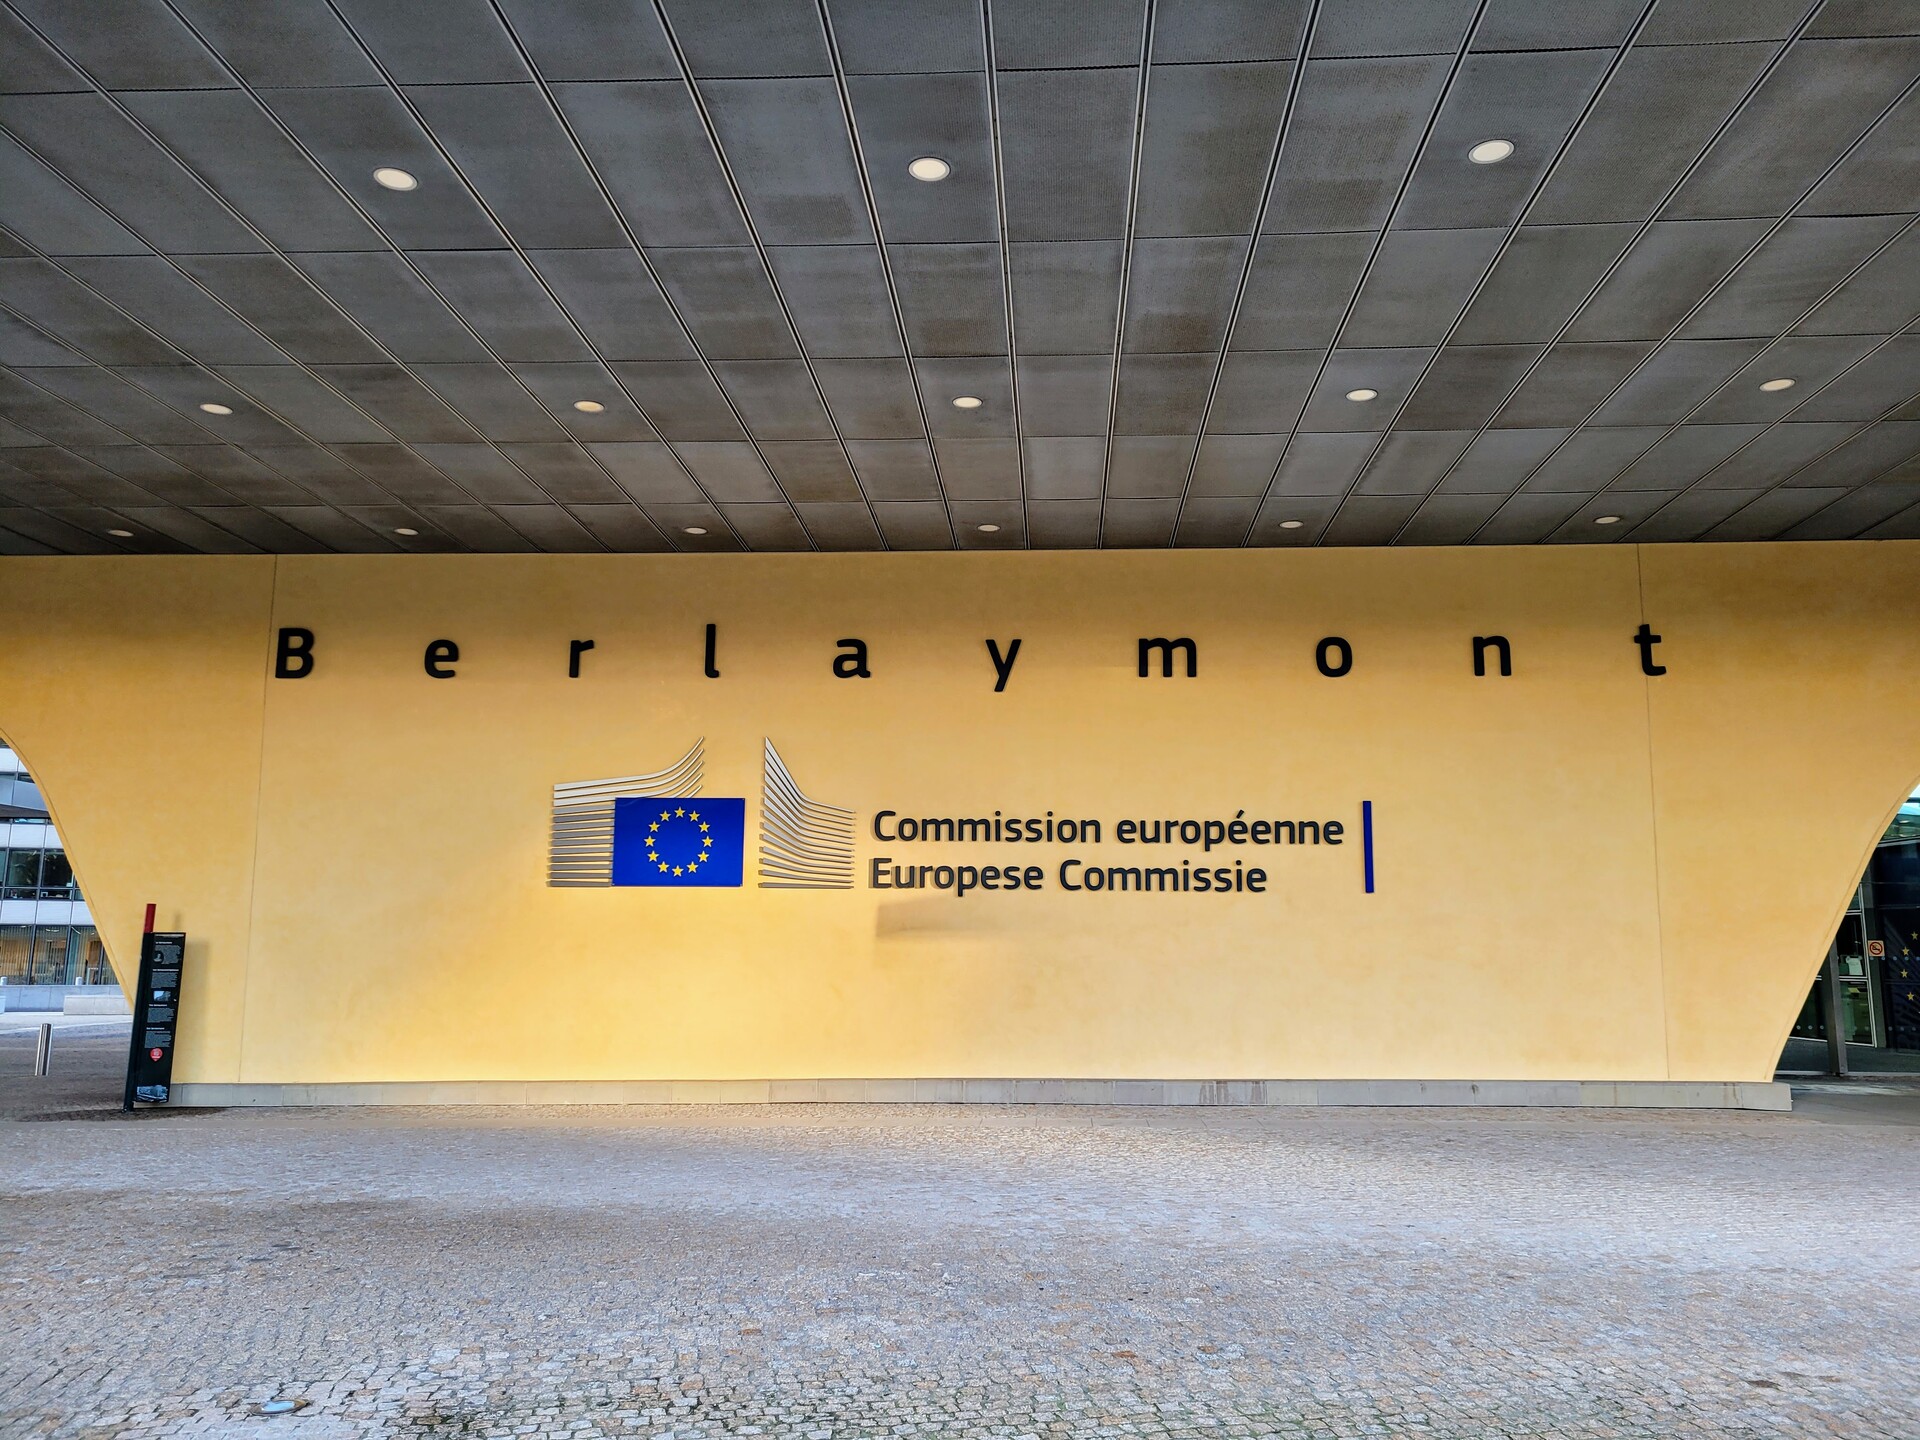 Gebäude mit der Aufschrift "Berlaymont - Commission européenne - Europese Comissie" und der EU-Flagge. 